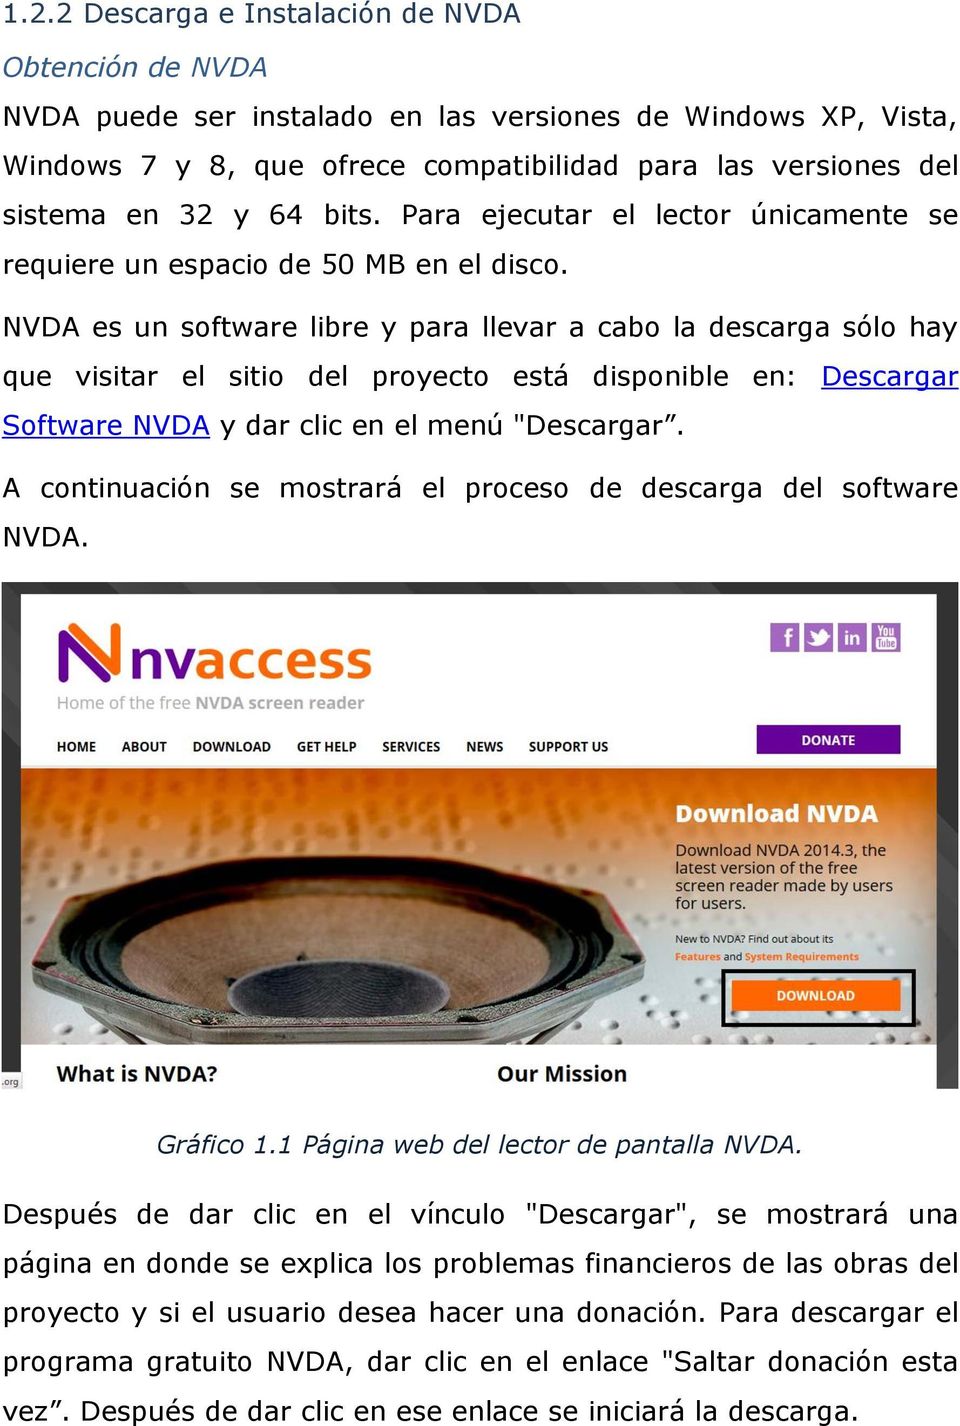 NVDA es un software libre y para llevar a cabo la descarga sólo hay que visitar el sitio del proyecto está disponible en: Descargar Software NVDA y dar clic en el menú "Descargar.